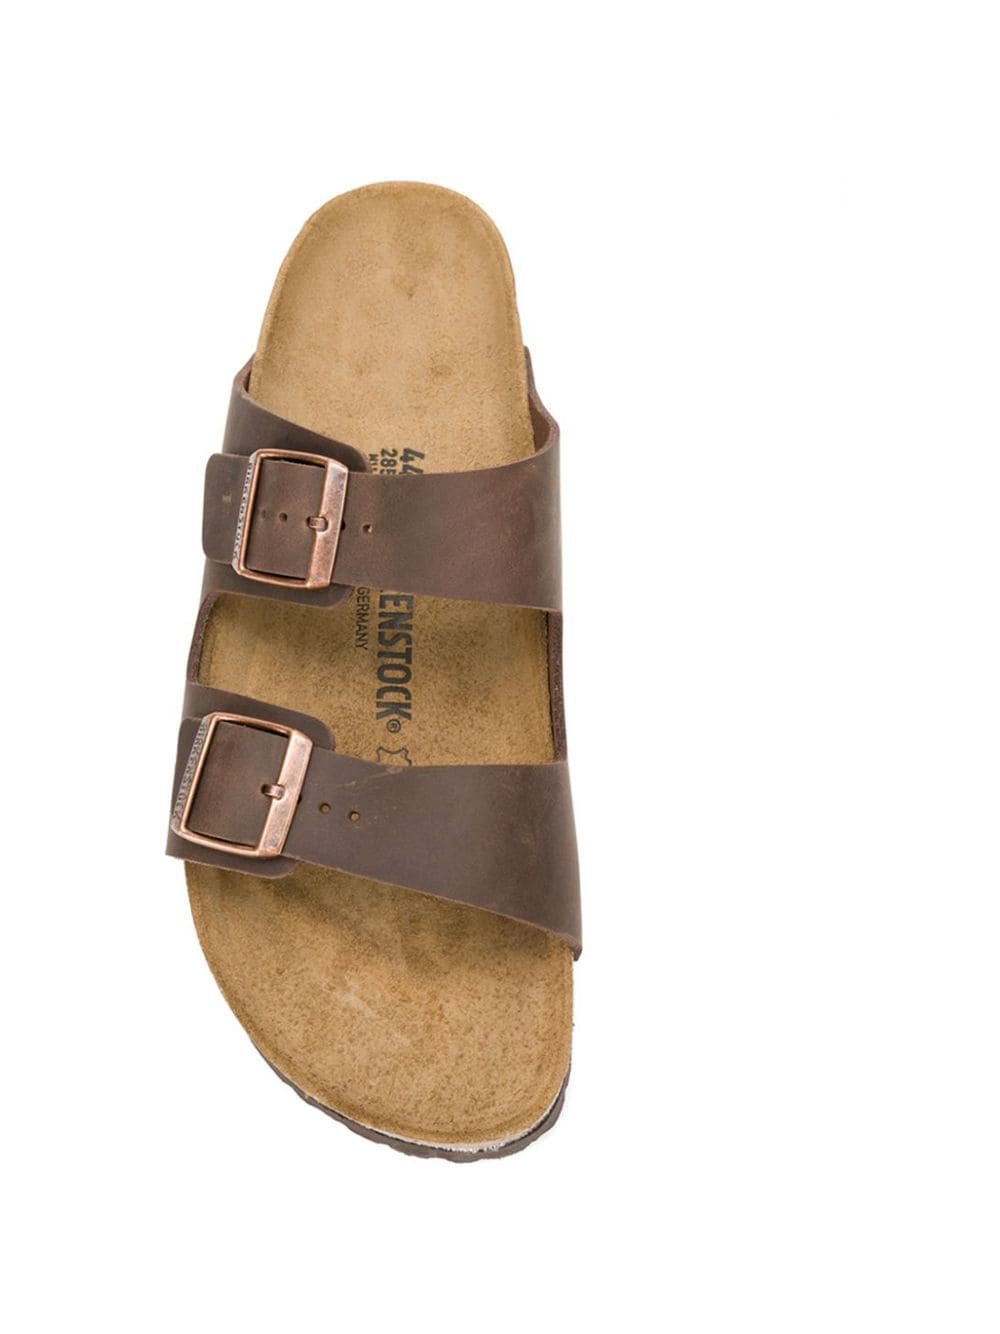 'Arizona' sandals